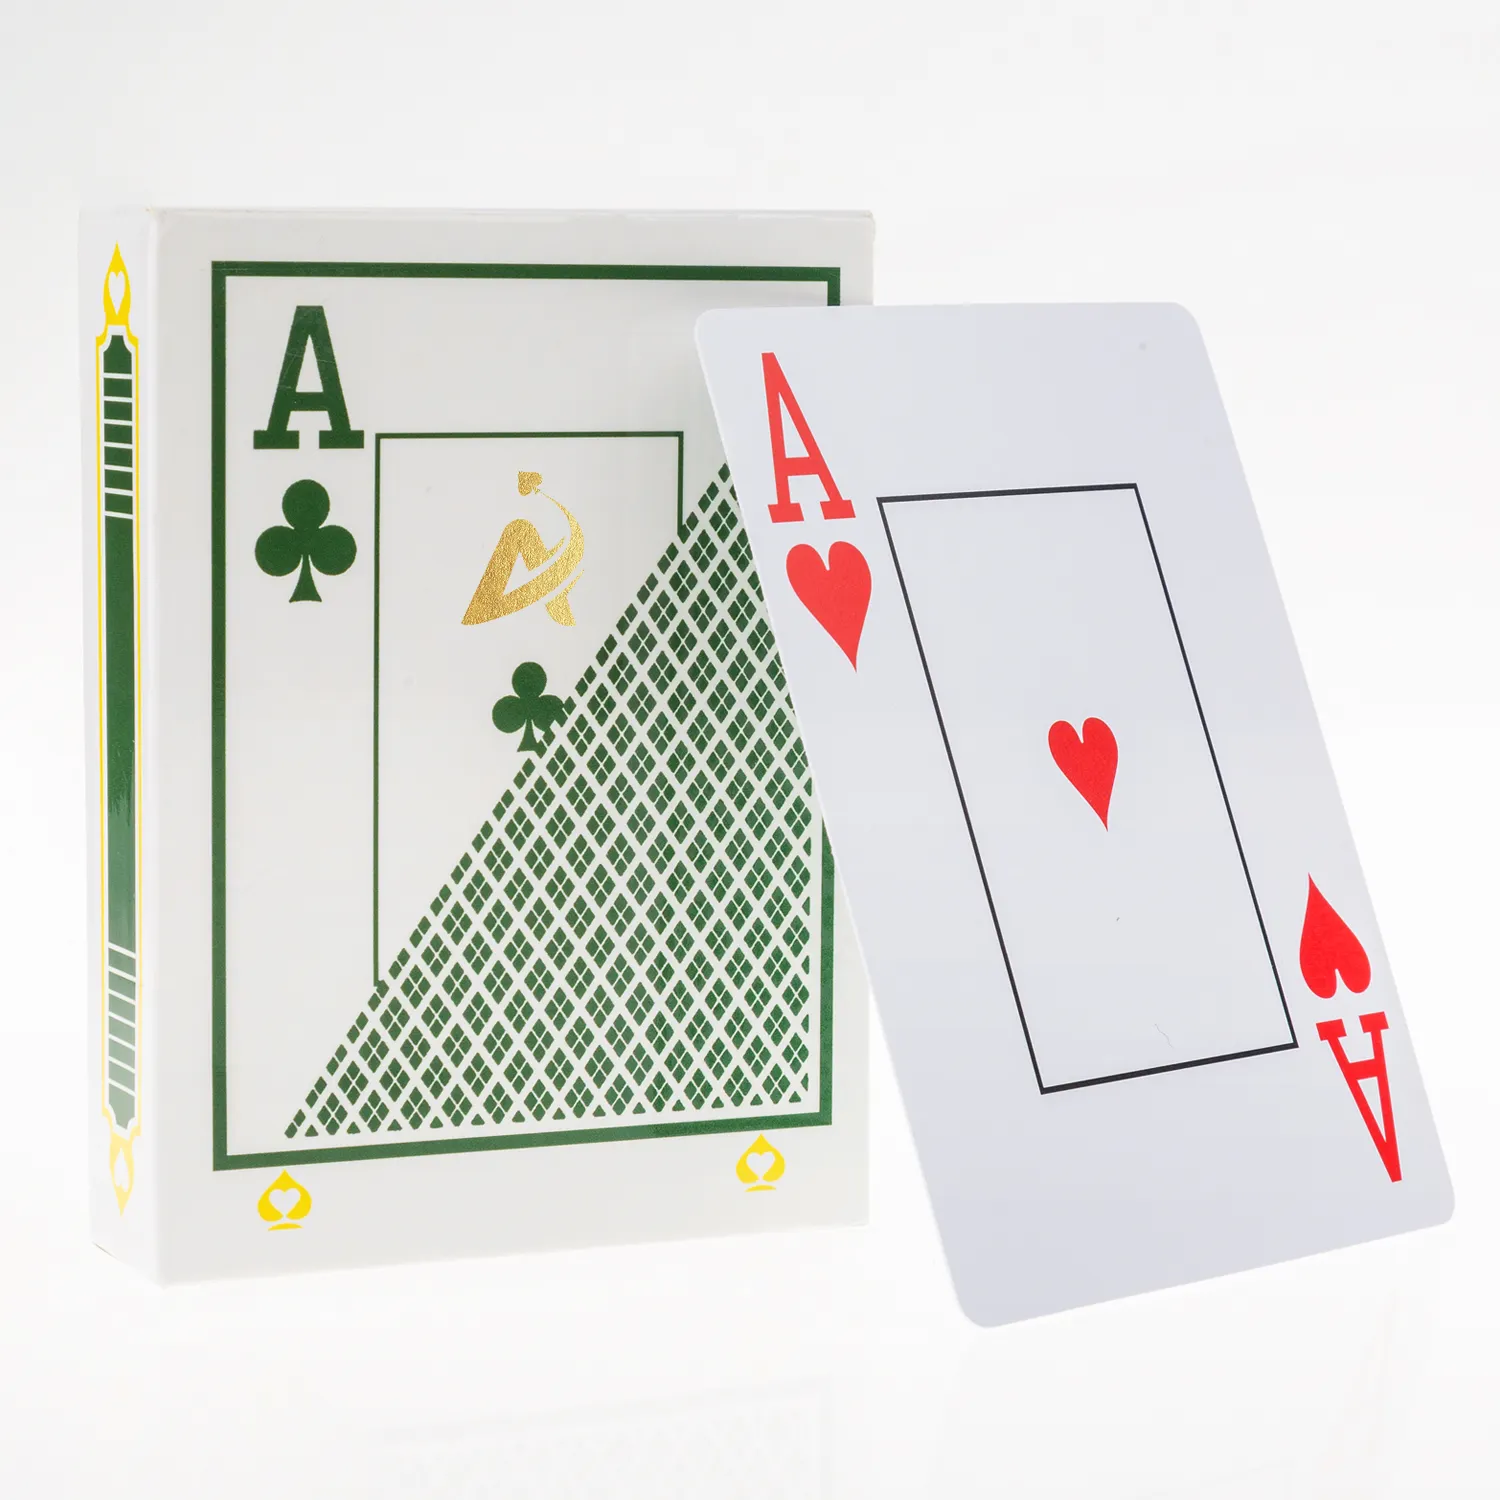 AYPC toptan yüksek kalite Casino baskı hizmeti içme yetişkin flaş oyun satranç tahtası ticaret iskambil Poker kartları